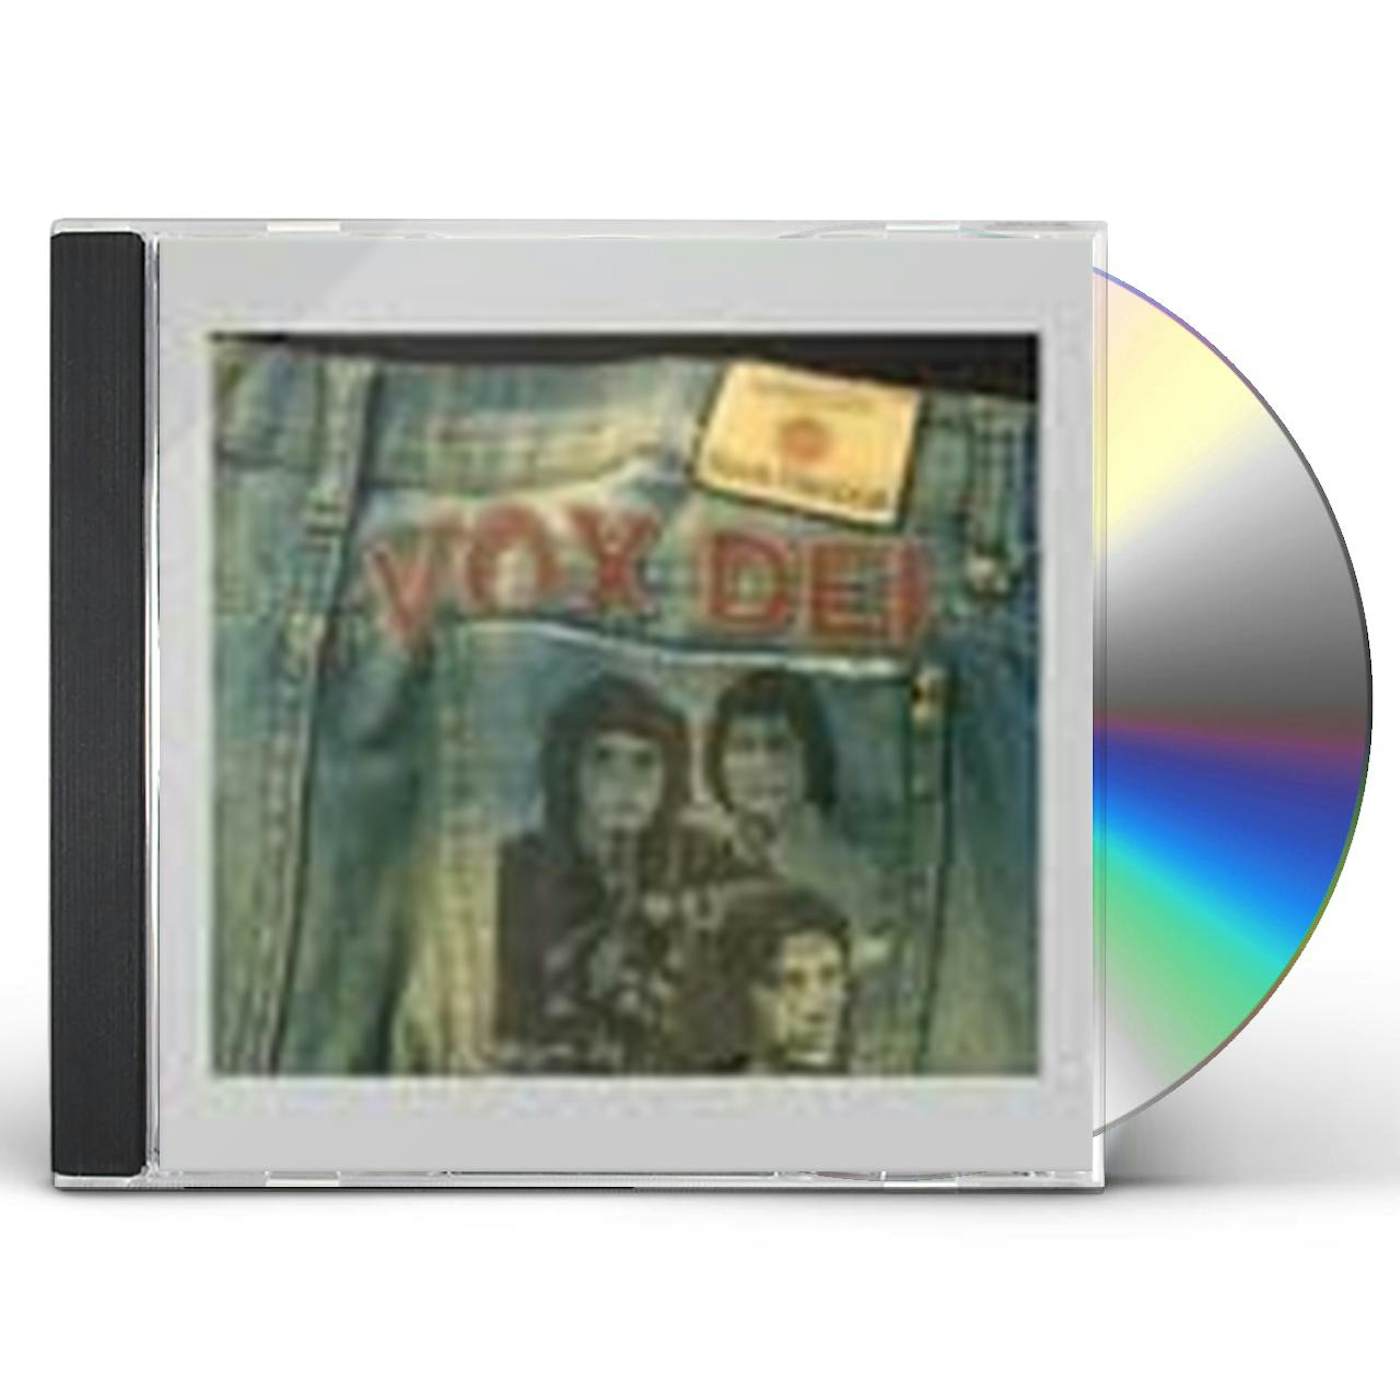 VOX DEI CD